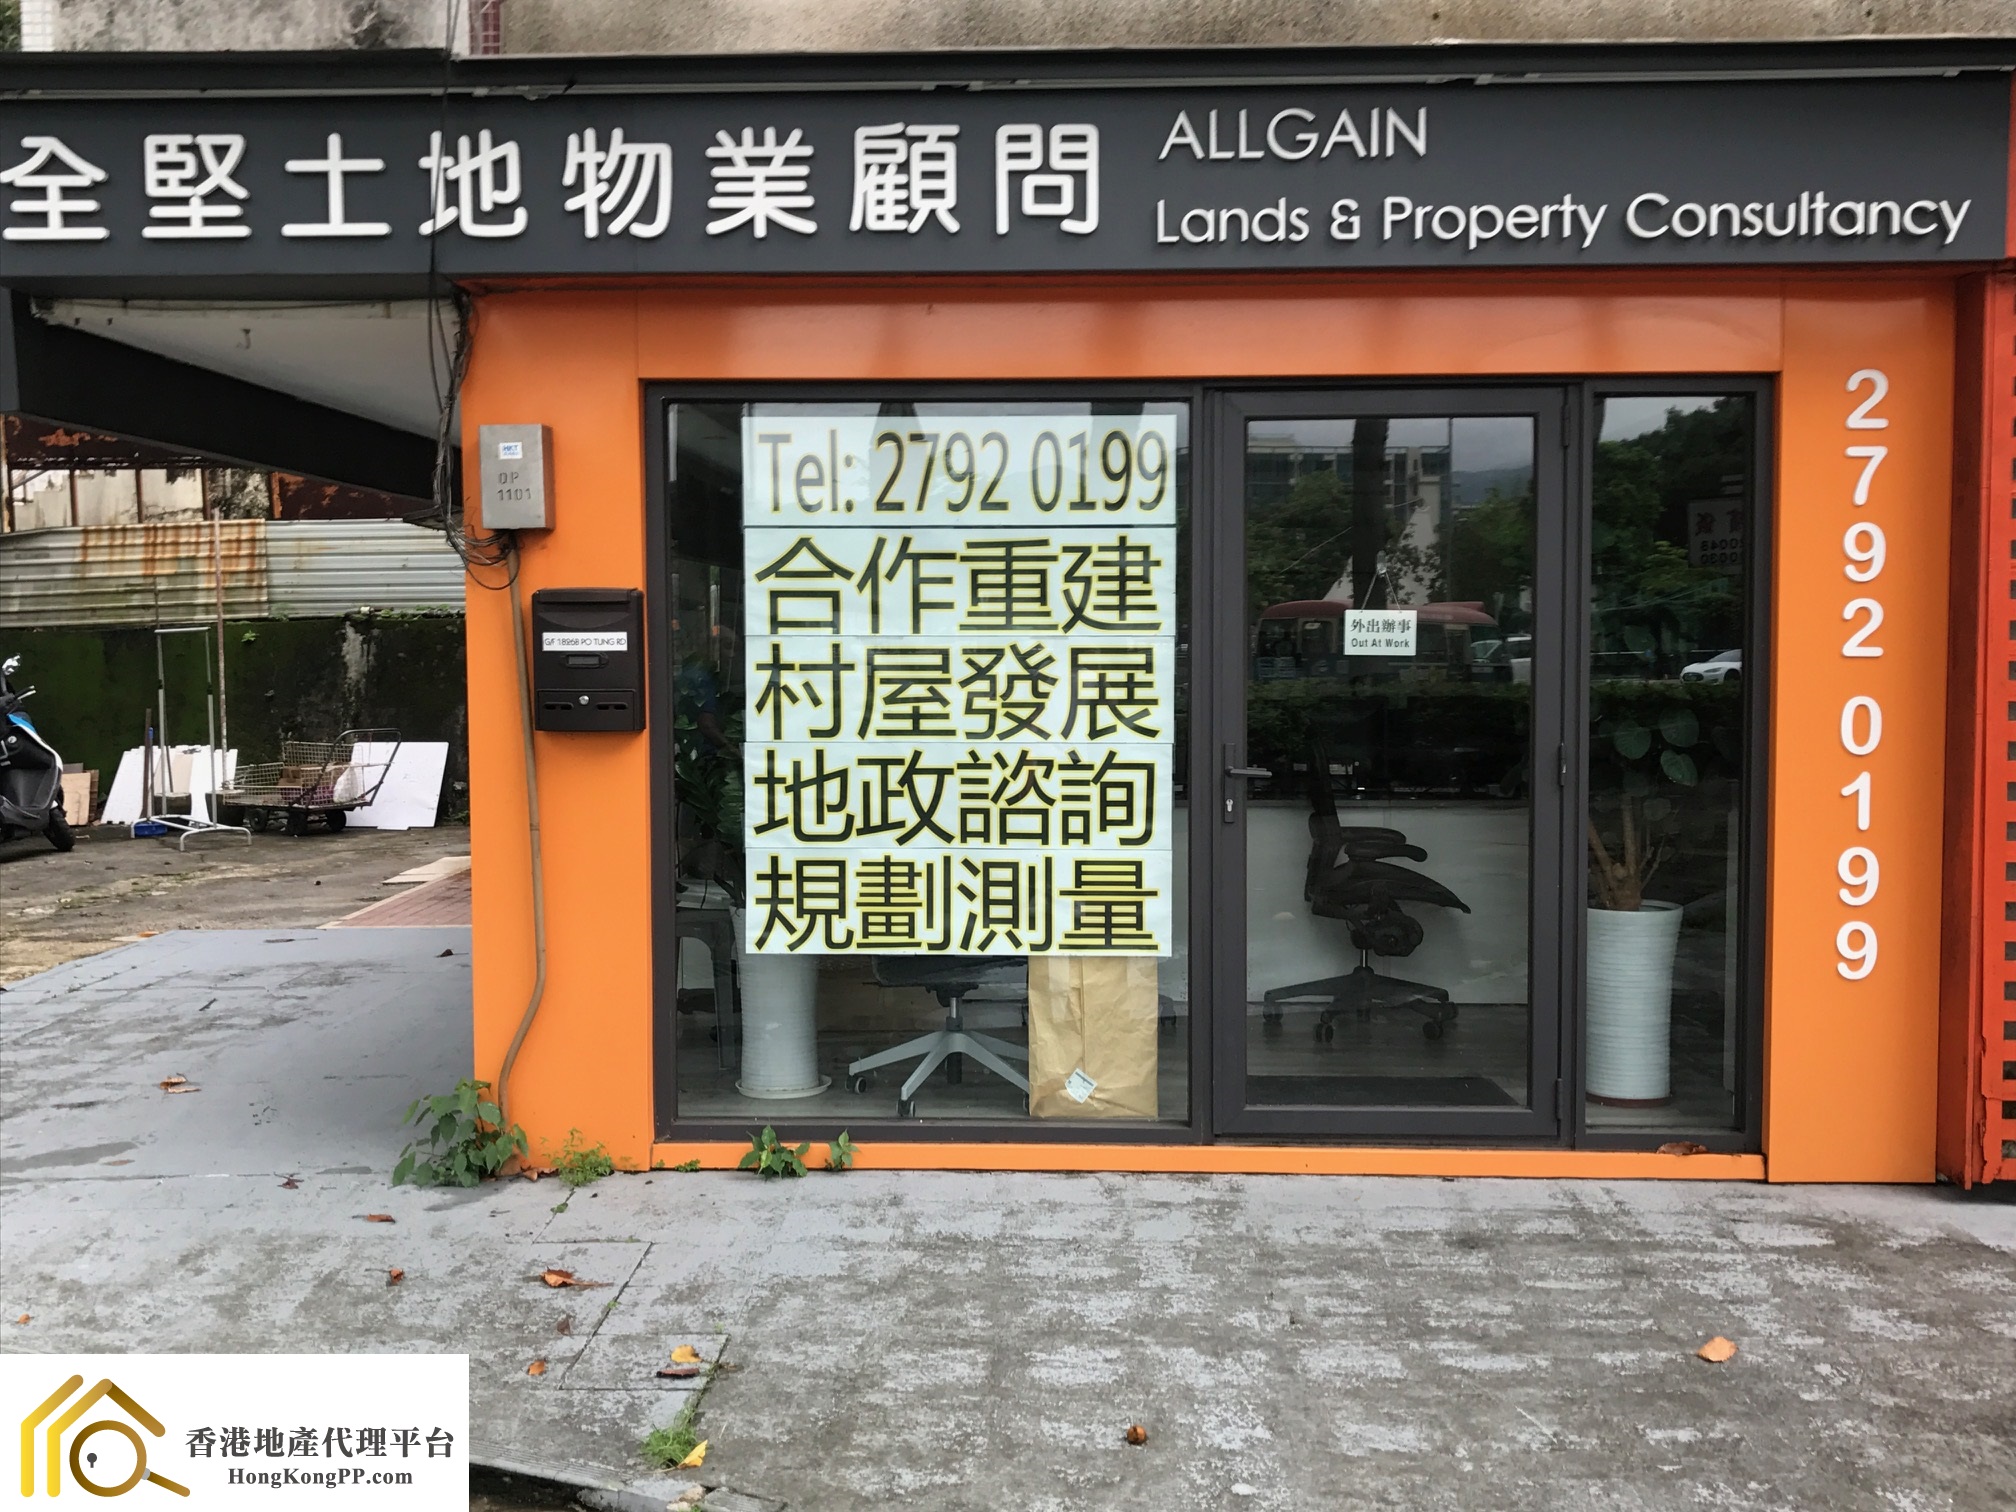 村屋地產代理: 全堅土地物業顧問 Allgain Lands & Property Consultancy Ltd